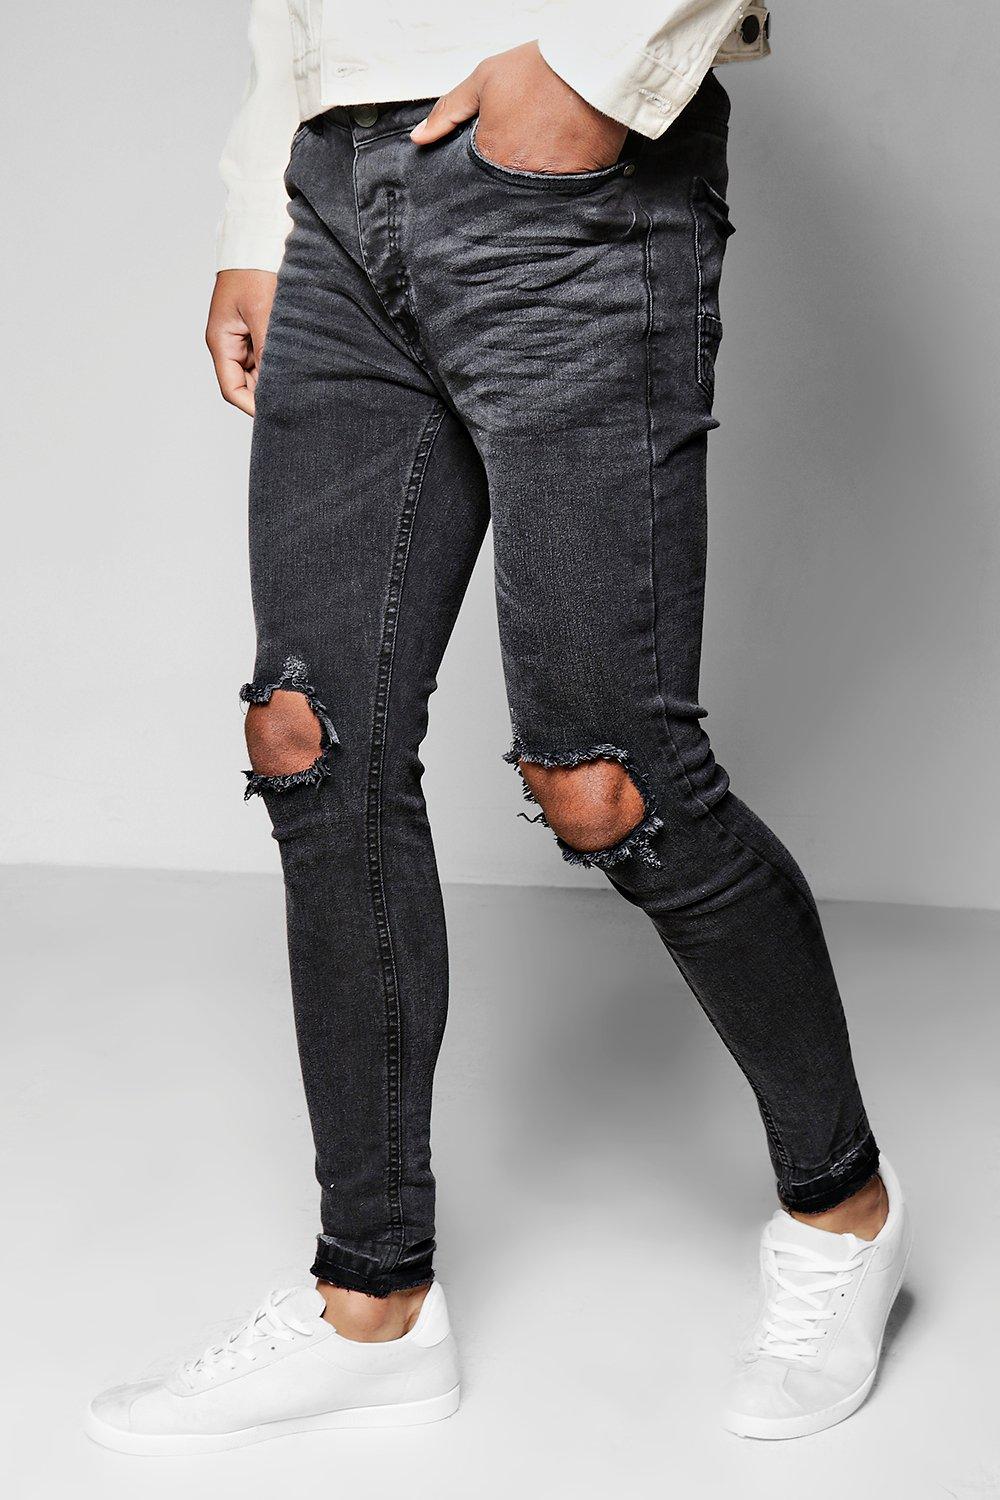 black open knee jeans